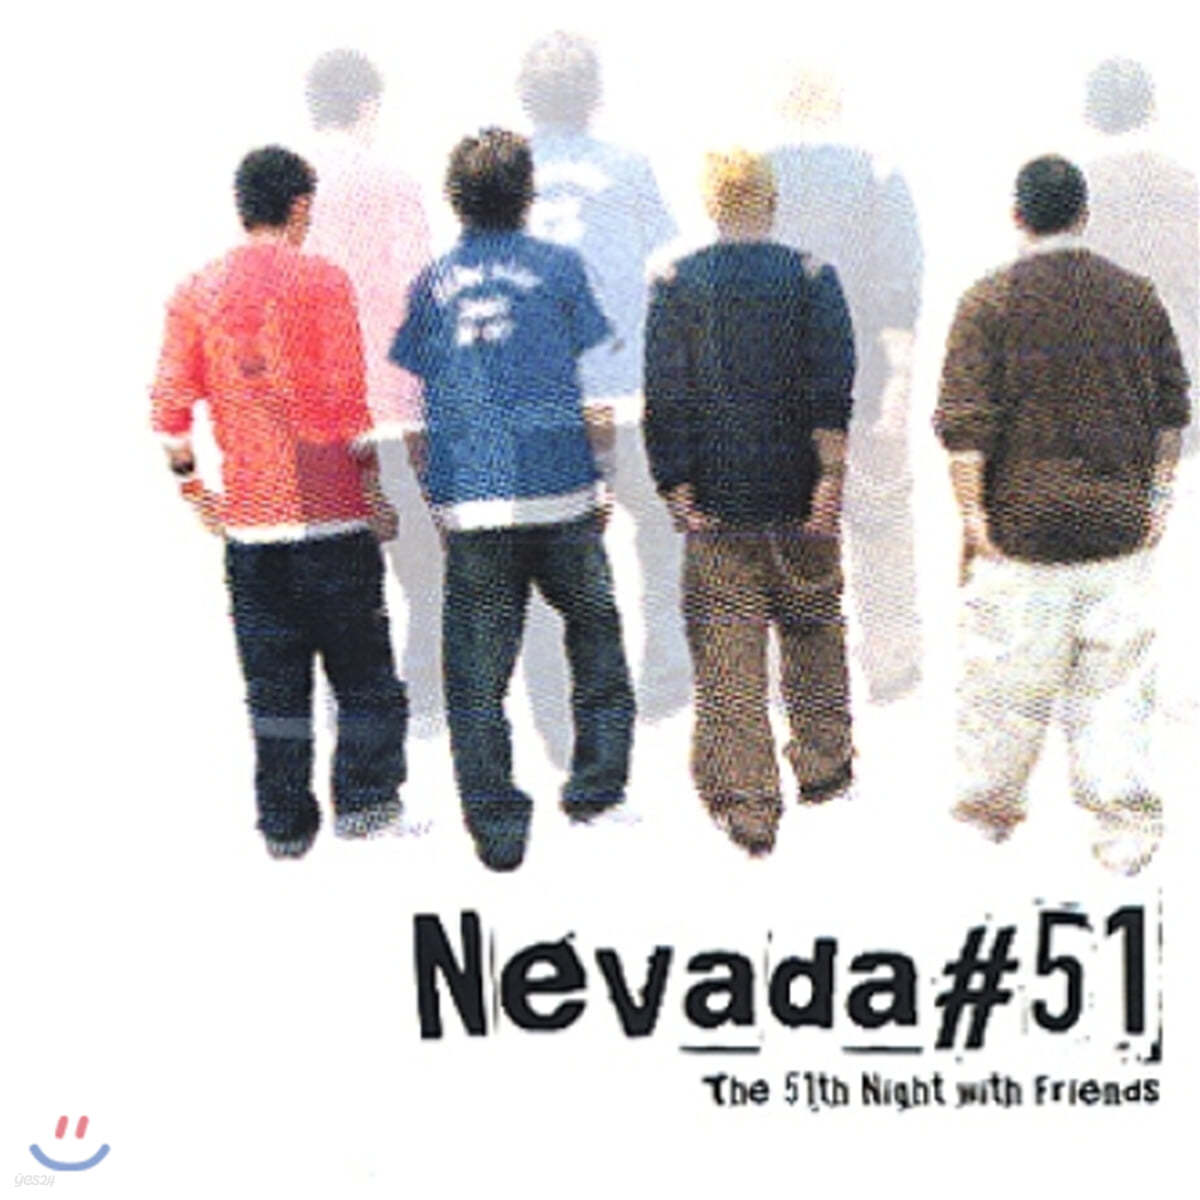 네바다 51 (Nevada #51) - The 51th Night With Friends